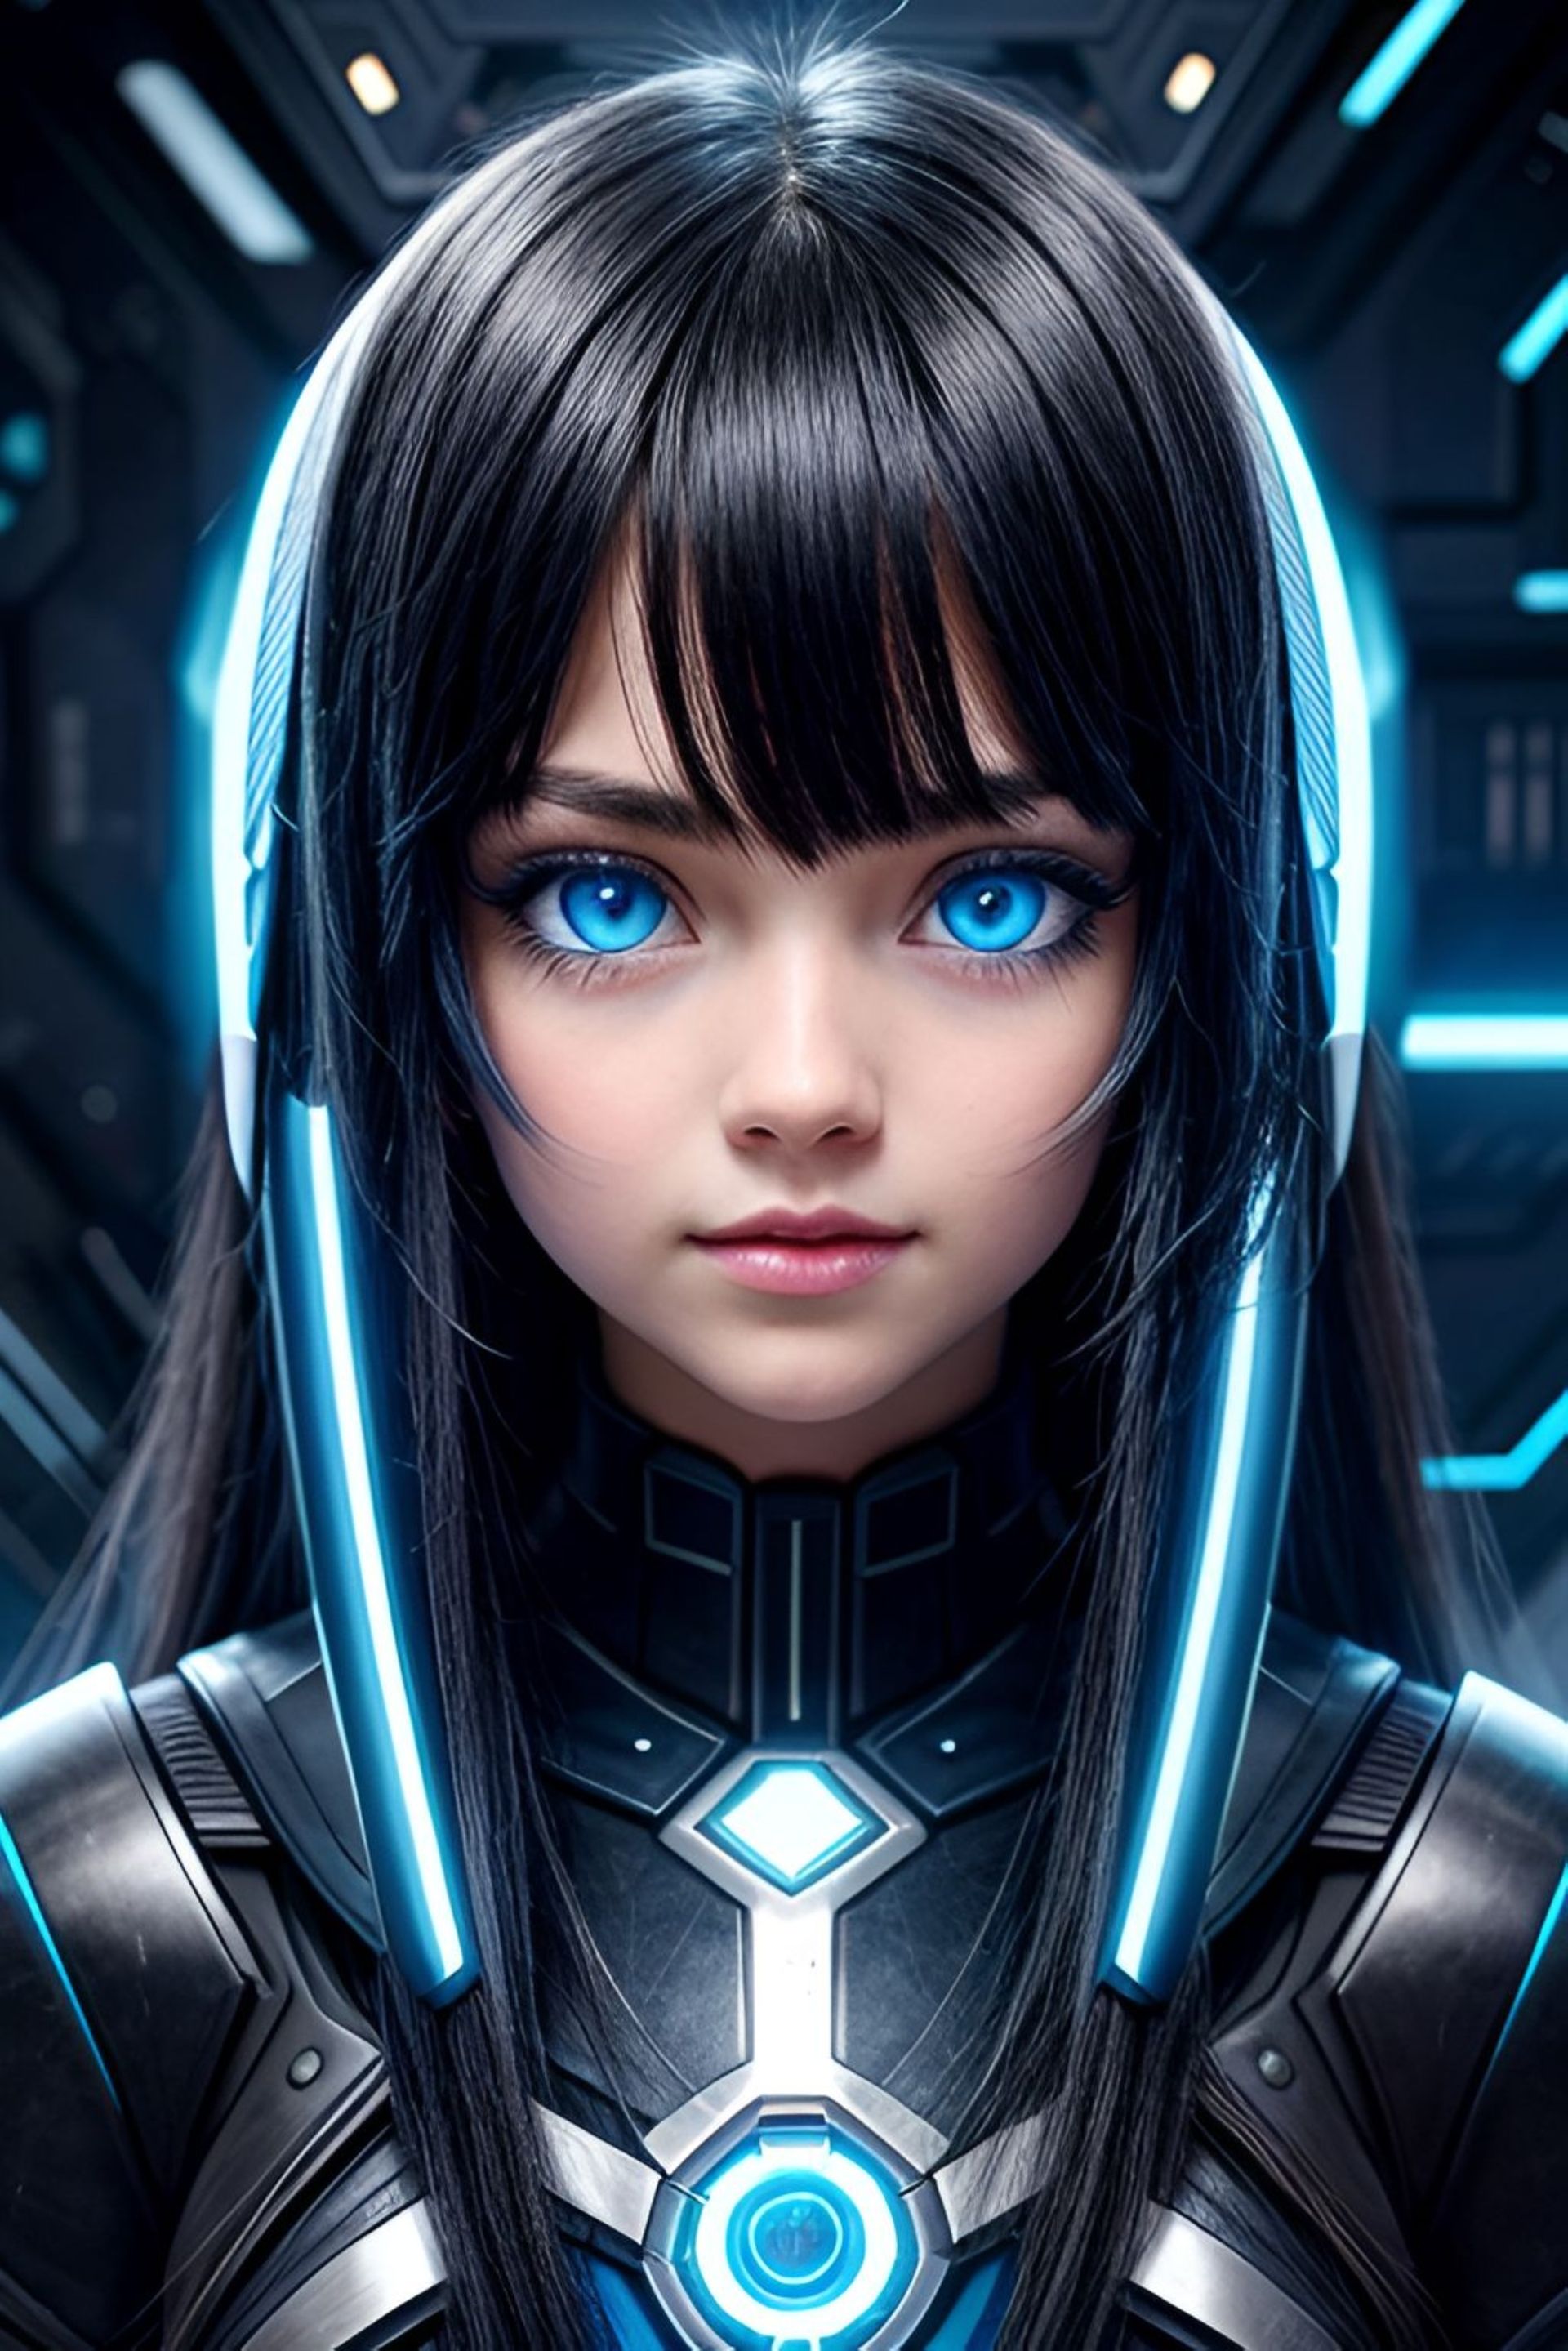 Бесплатное фото Девушка, киборг, с голубыми глазами, в силовой броне.